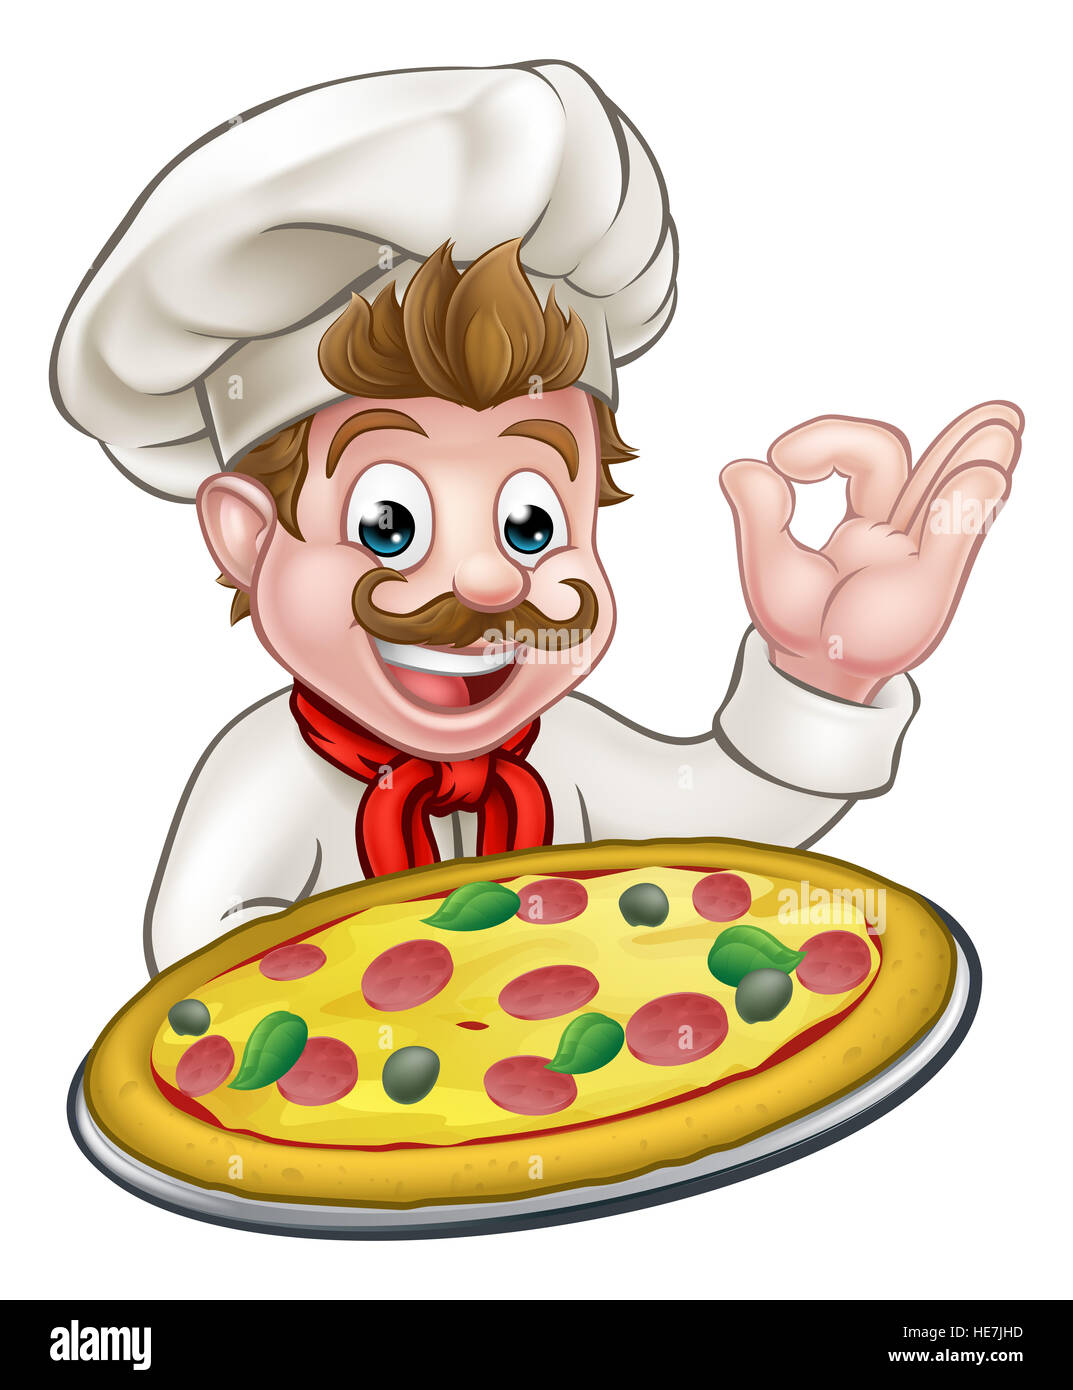 Cartoon chef holding a pizza et donnant un bon geste cook delicious parfait Banque D'Images